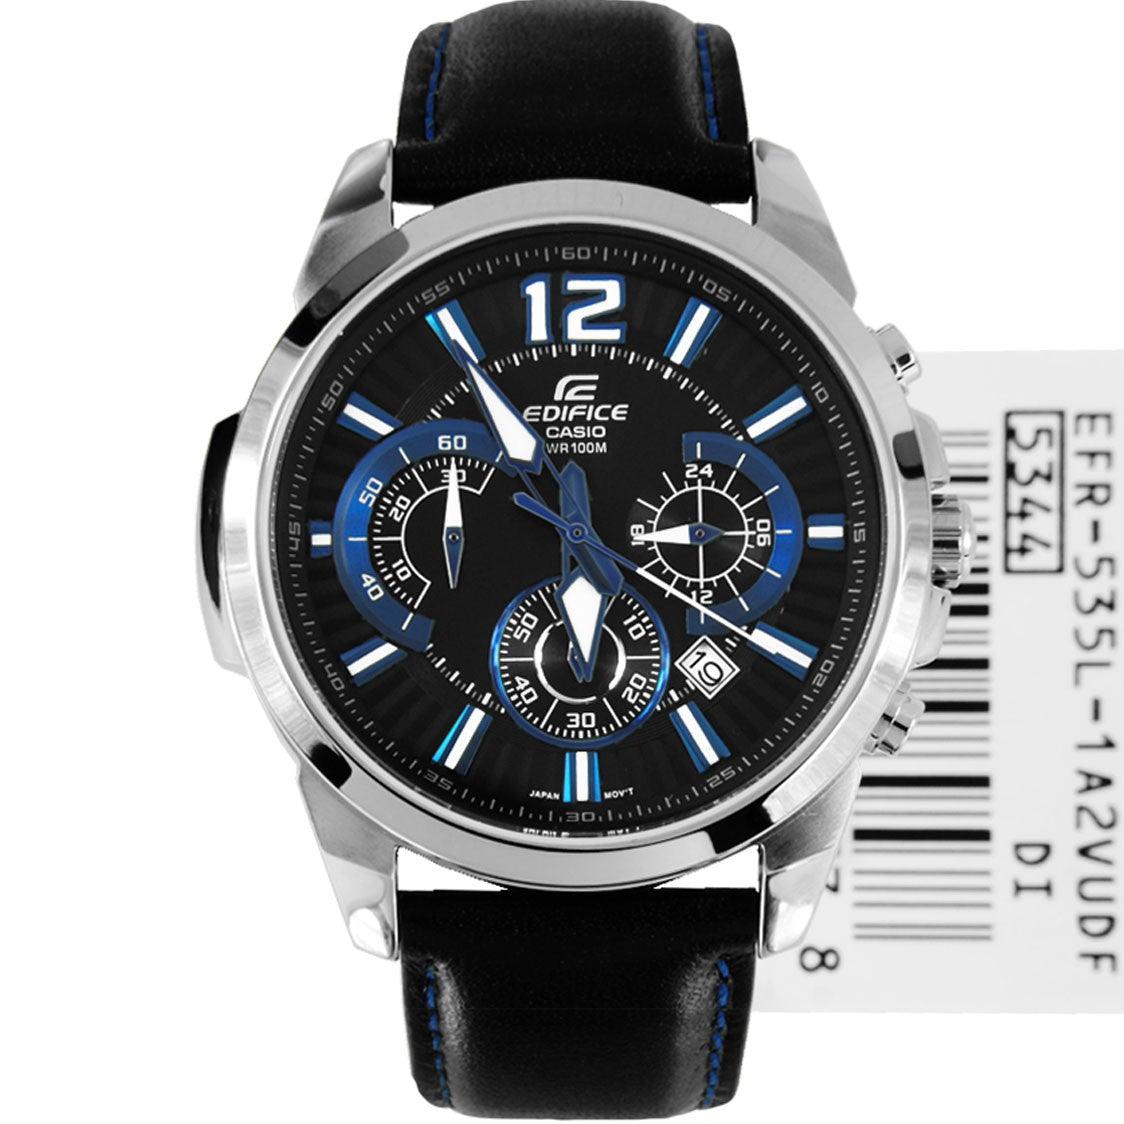 Casio Edifice black leather strap EFR 535l 1A2V watch - Obeezi.com